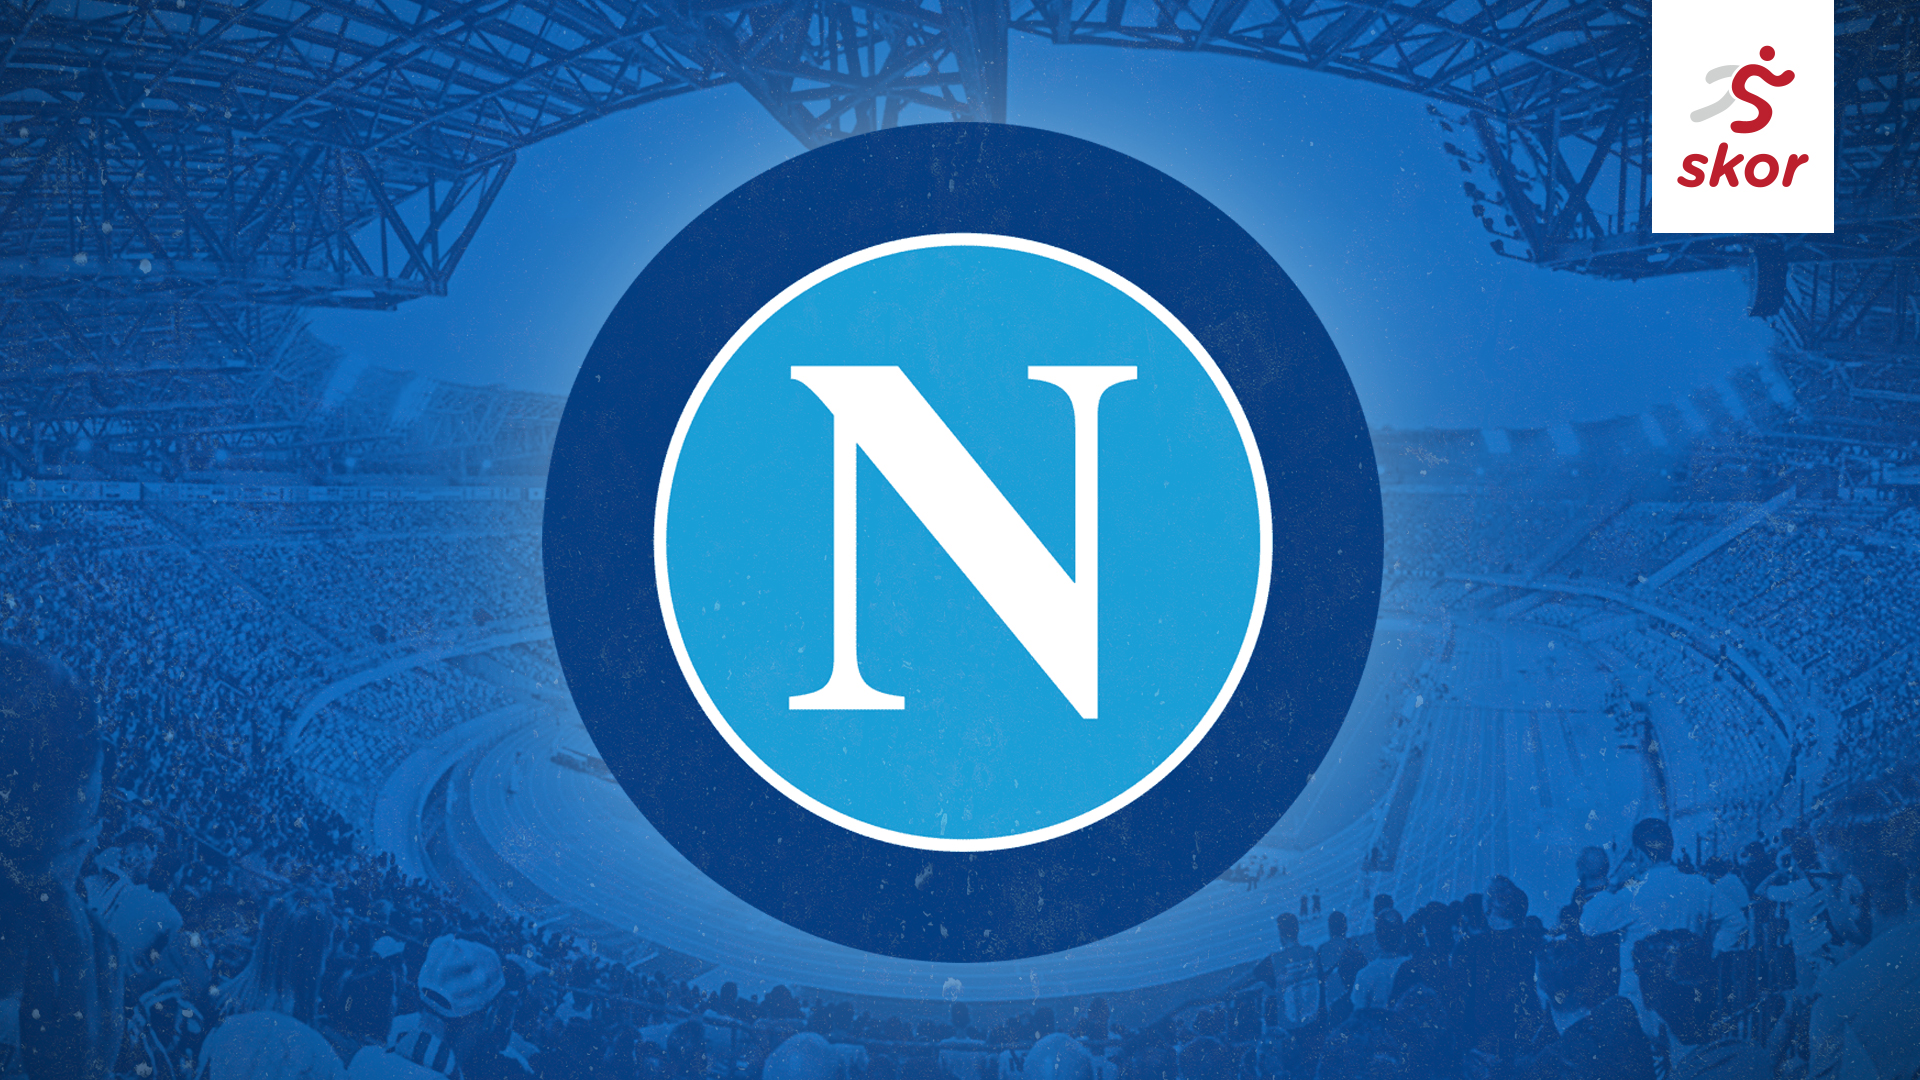 Pelatih Napoli Siap Kehilangan Kalidou Koulibaly di Tengah Rumor Ketertarikan Chelsea